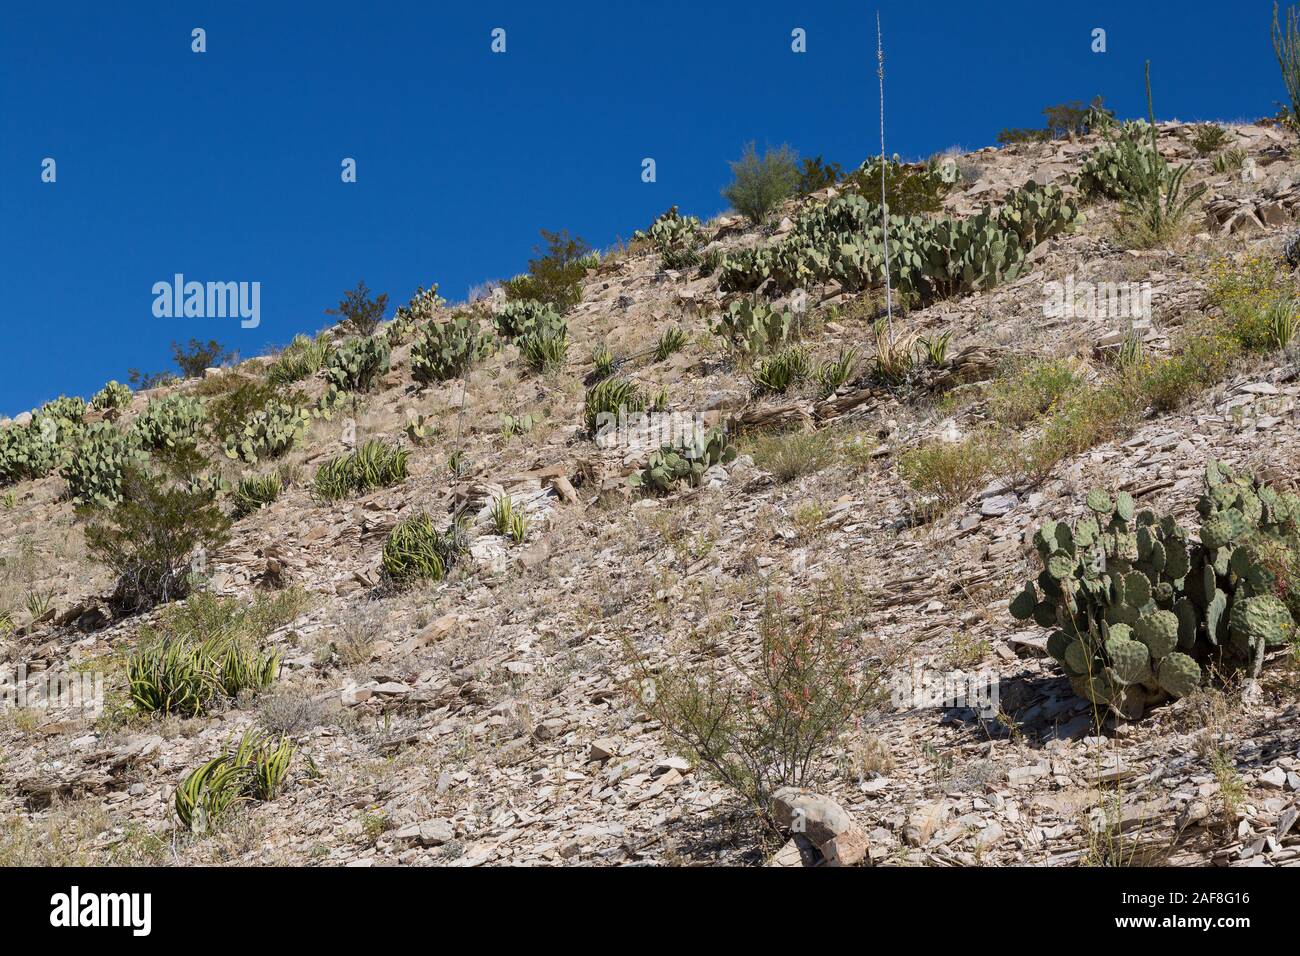 Big Bend National Park, Texas. La végétation du désert de Chihuahuan : Agave lechuguilla, poussant parmi les cactus Pricklypear (Castor). Banque D'Images